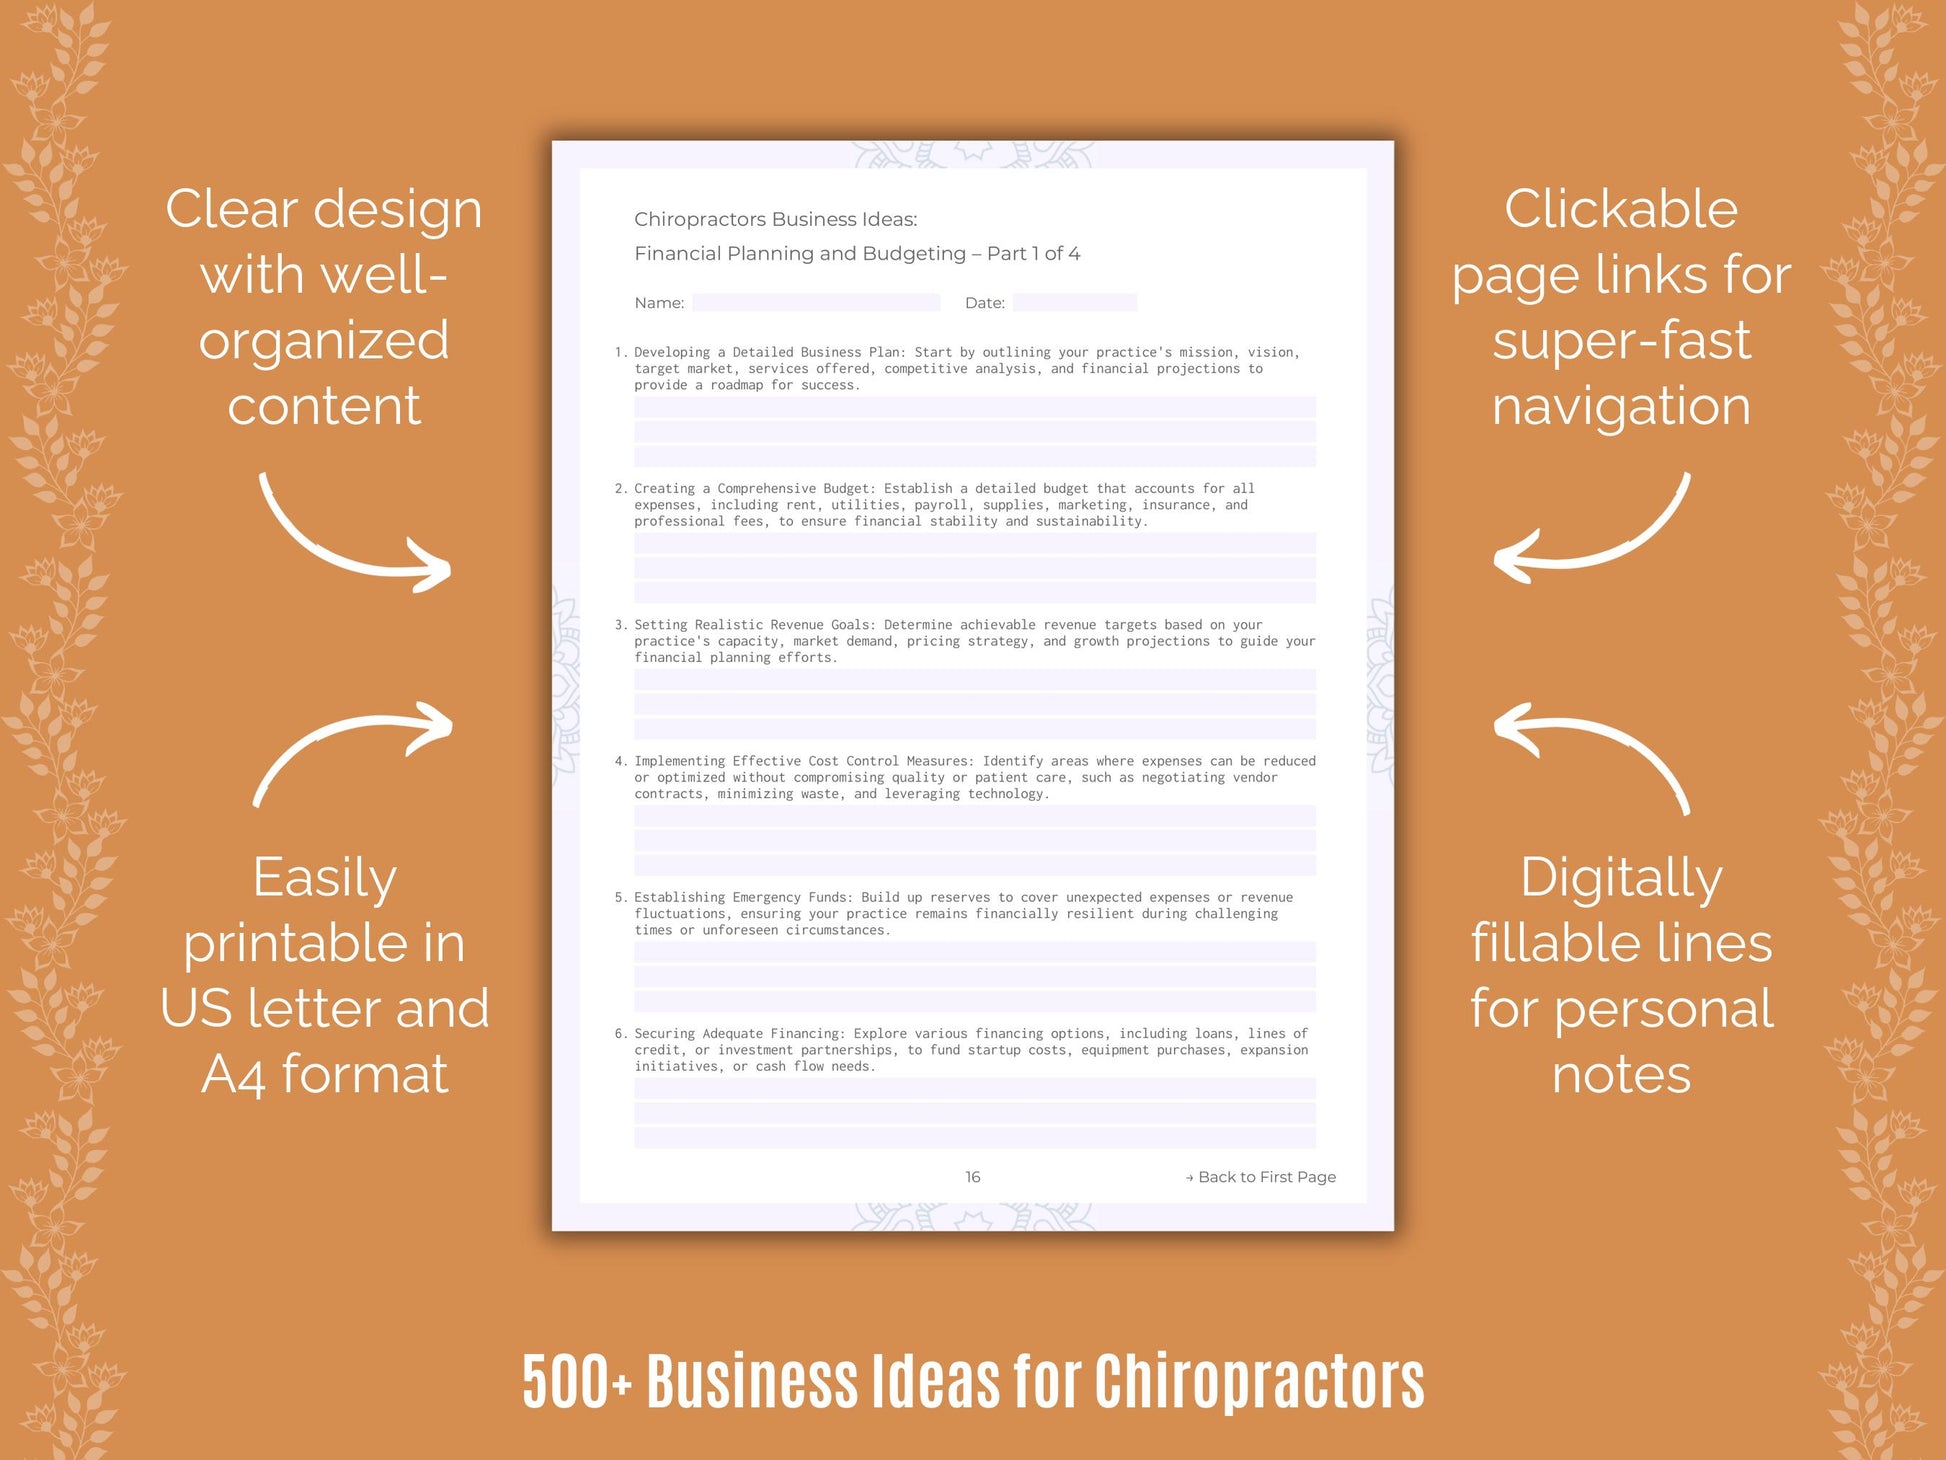 Chiropractors Business Ideas